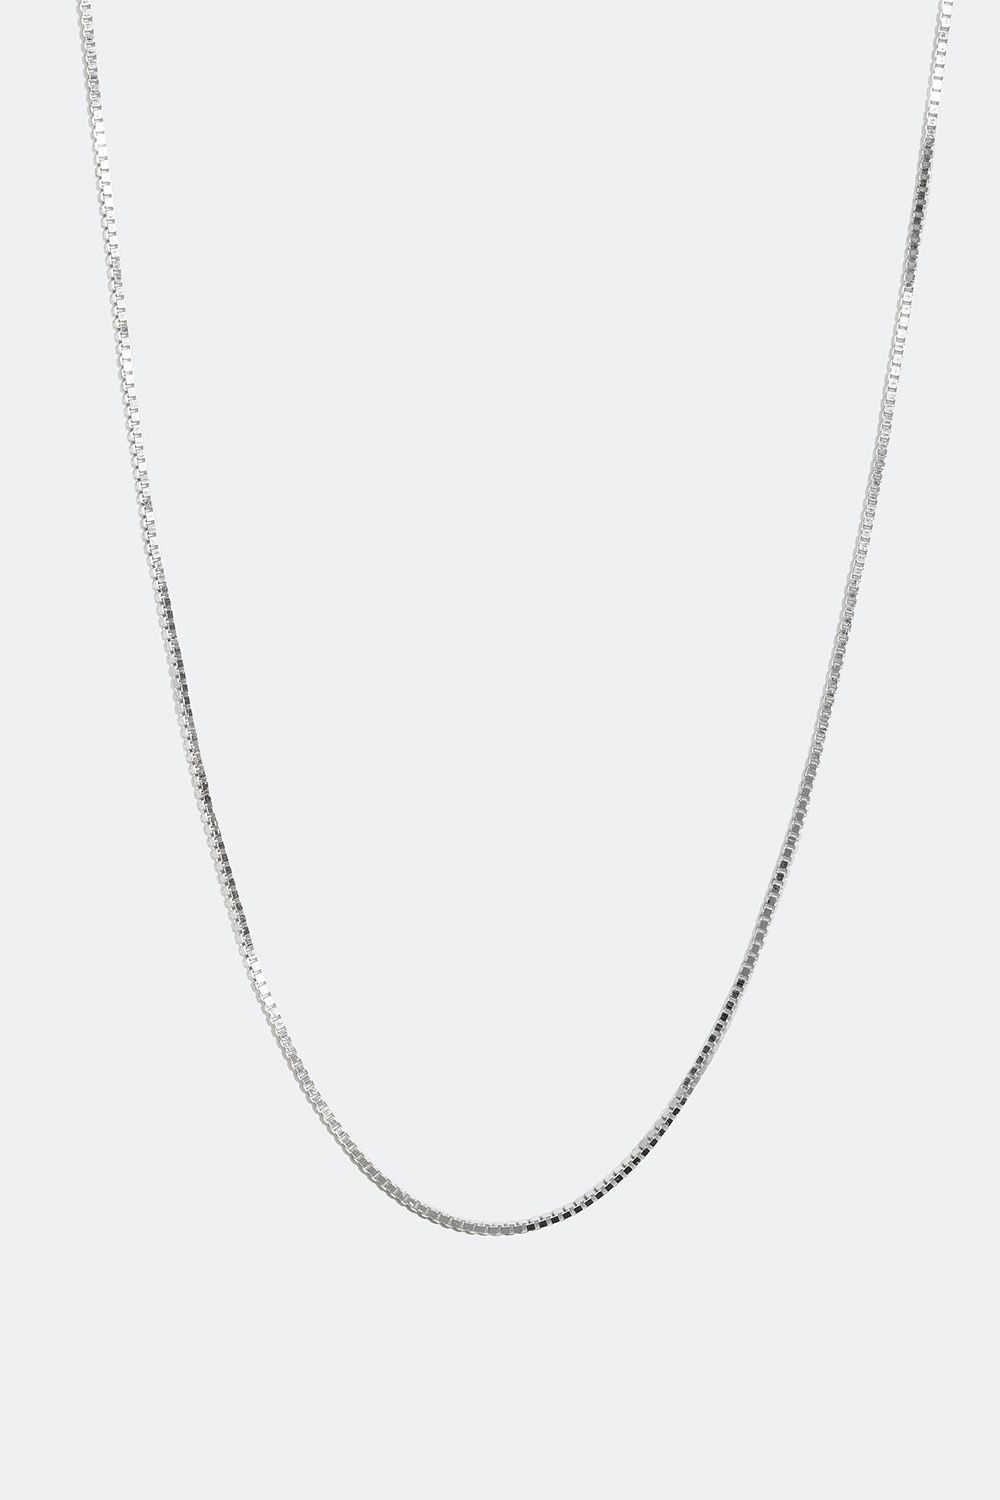 Veneziahalskæde i ægte sølv, 45 cm